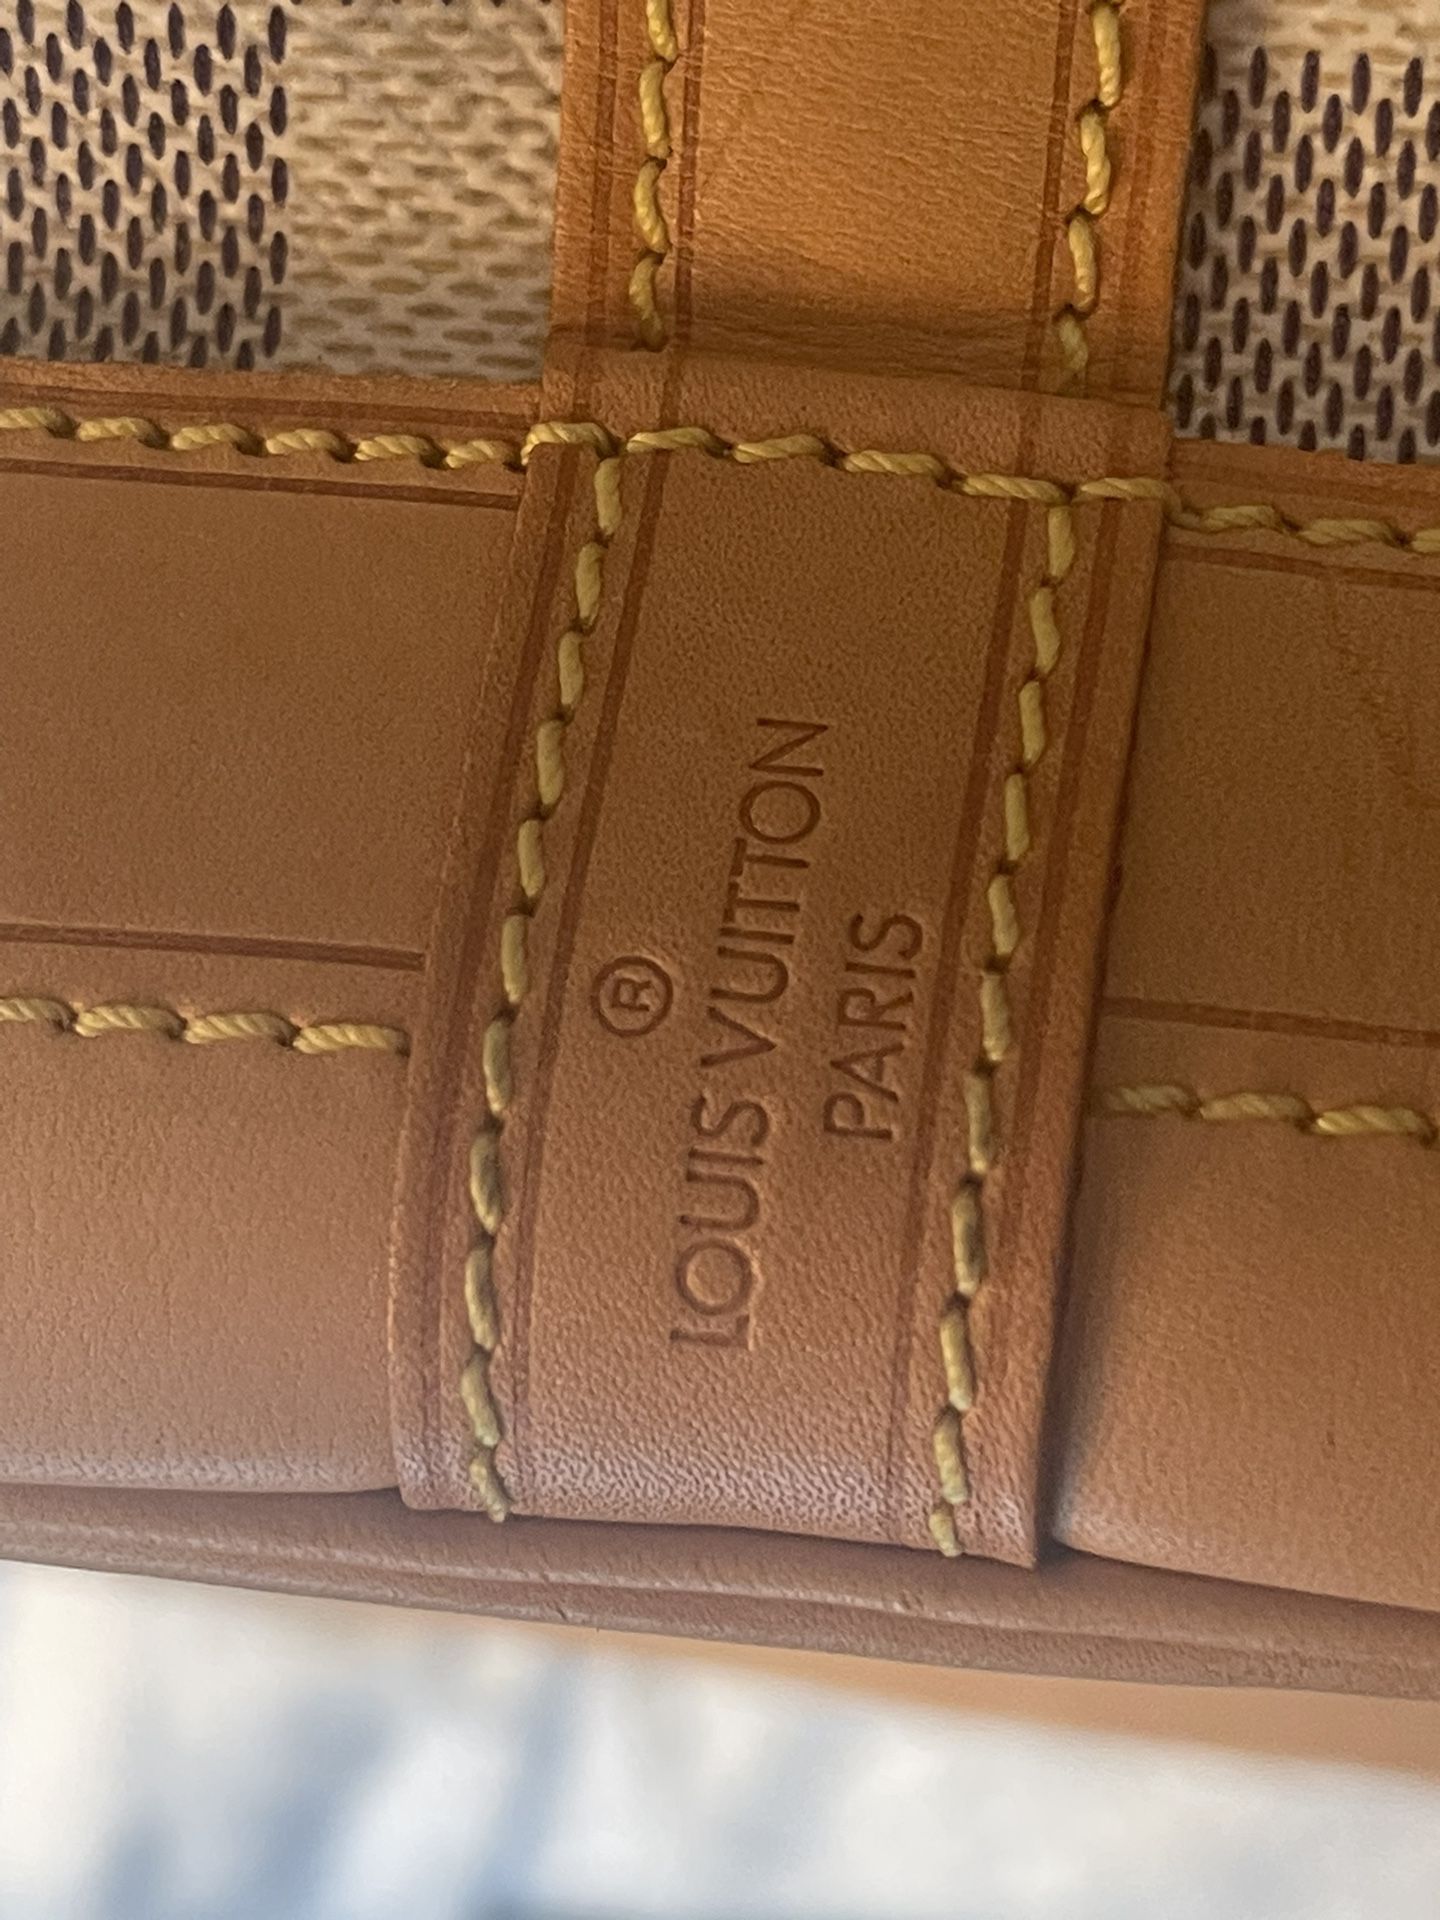 Louis Vuitton Wallet for Sale in Ramsey, NJ - OfferUp